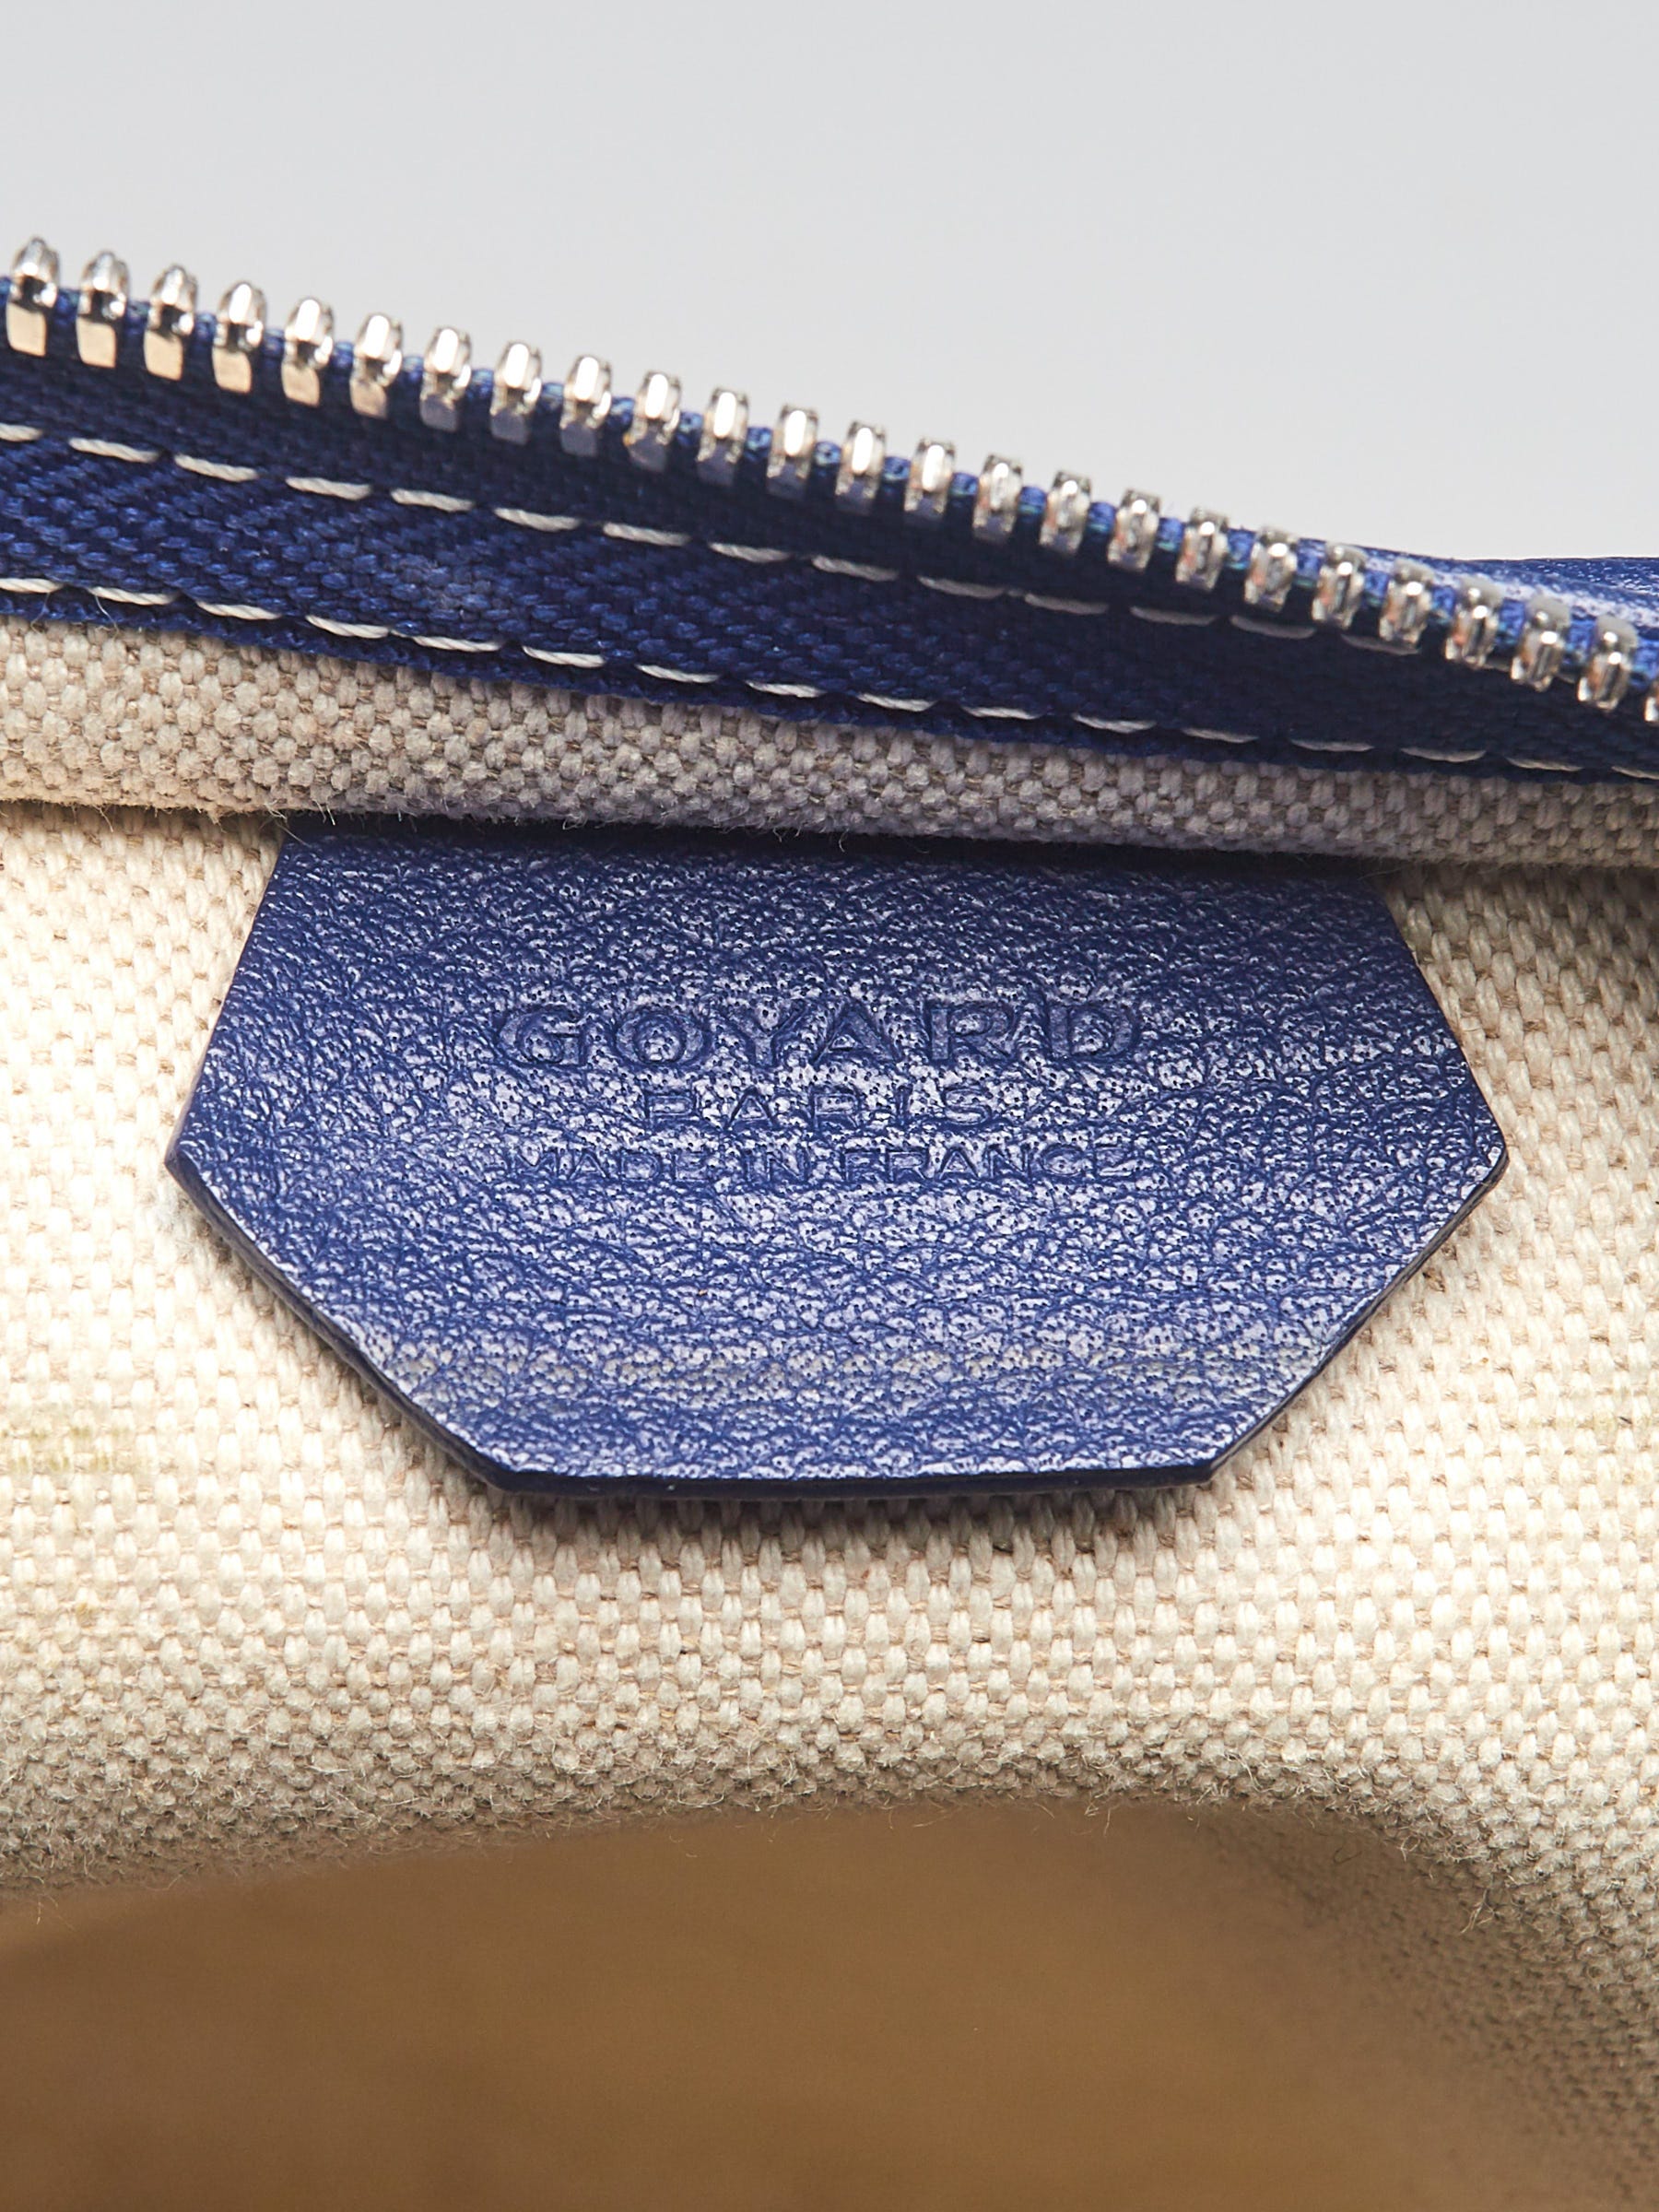 Pre-owned Authentic GOYARD Grenadine Hobo Shoulder Bag - Light Blue